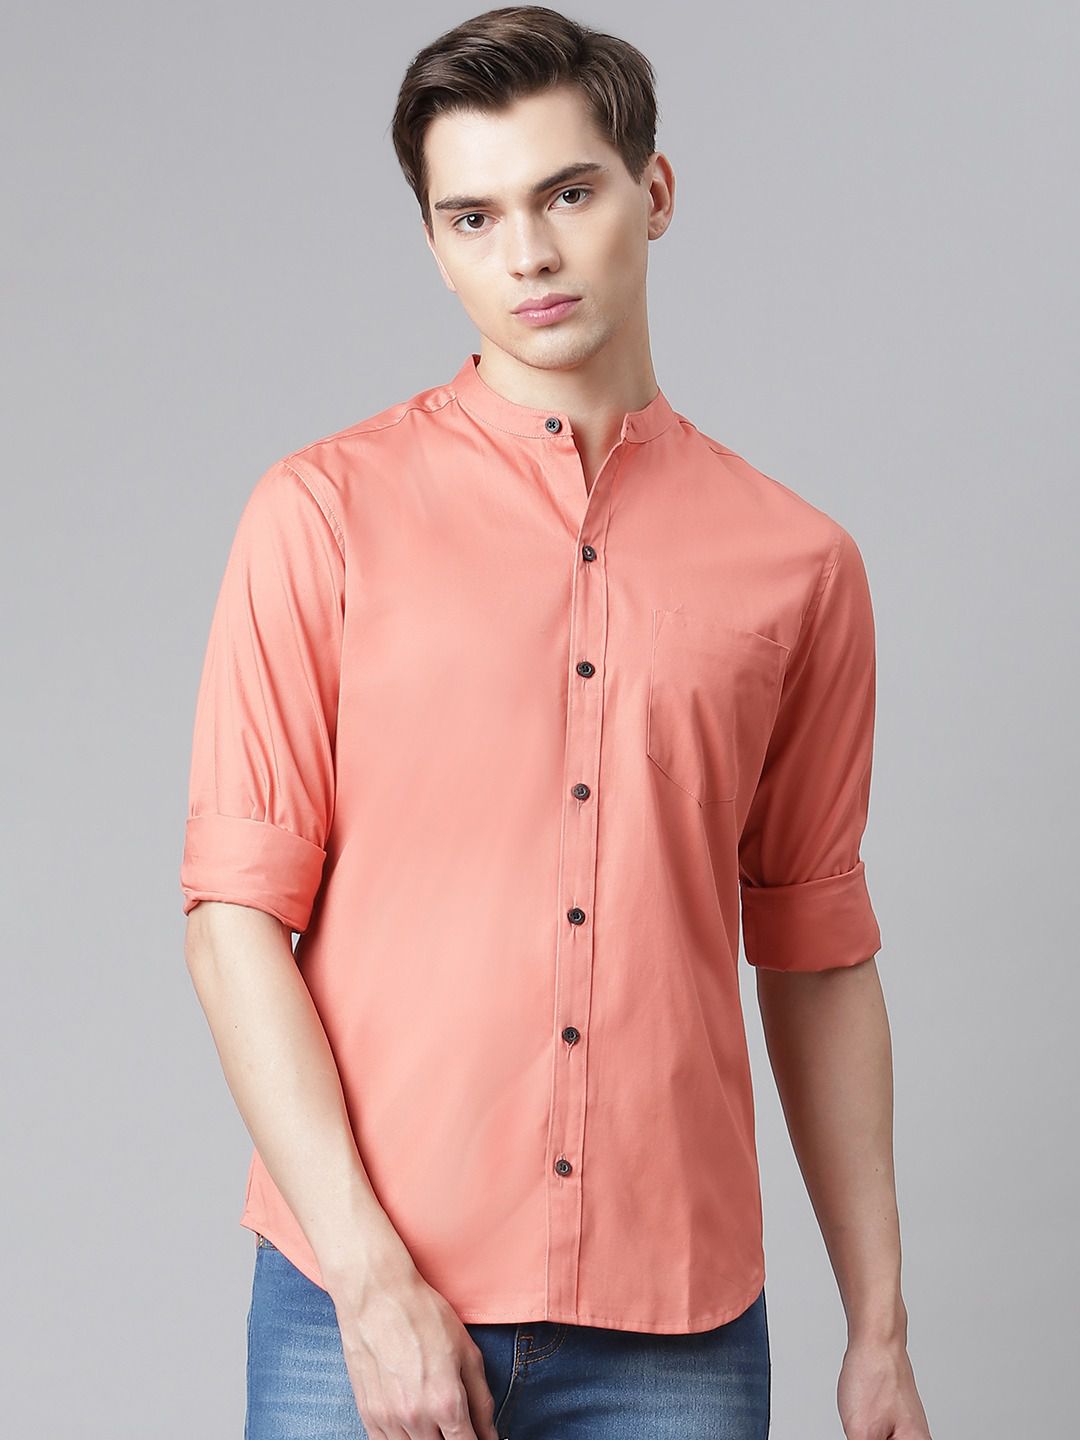     			Hubberholme - Peach 100% Cotton Regular Fit Men's Casual Shirt ( Pack of 1 )